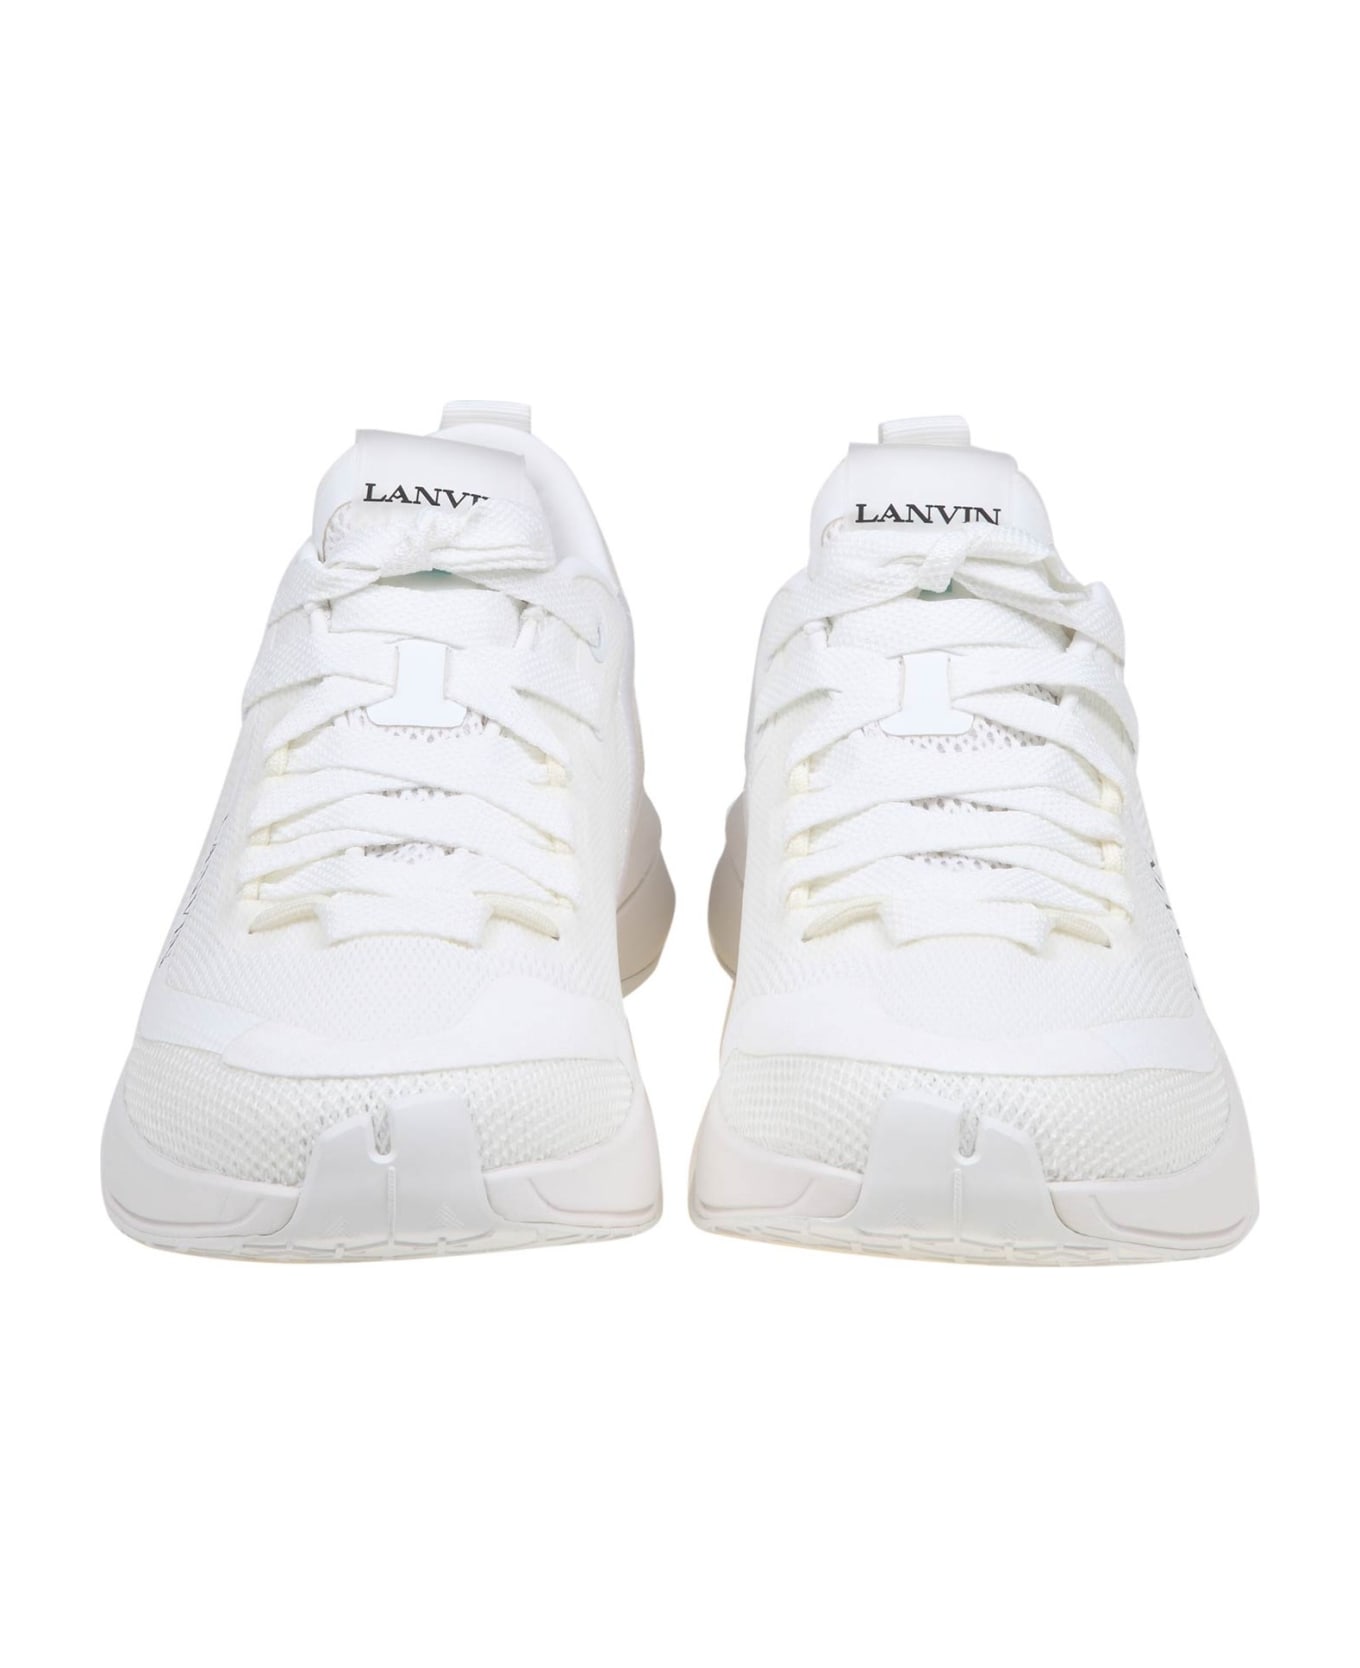 Lanvin Runner Sneakers In White Mesh - White/White